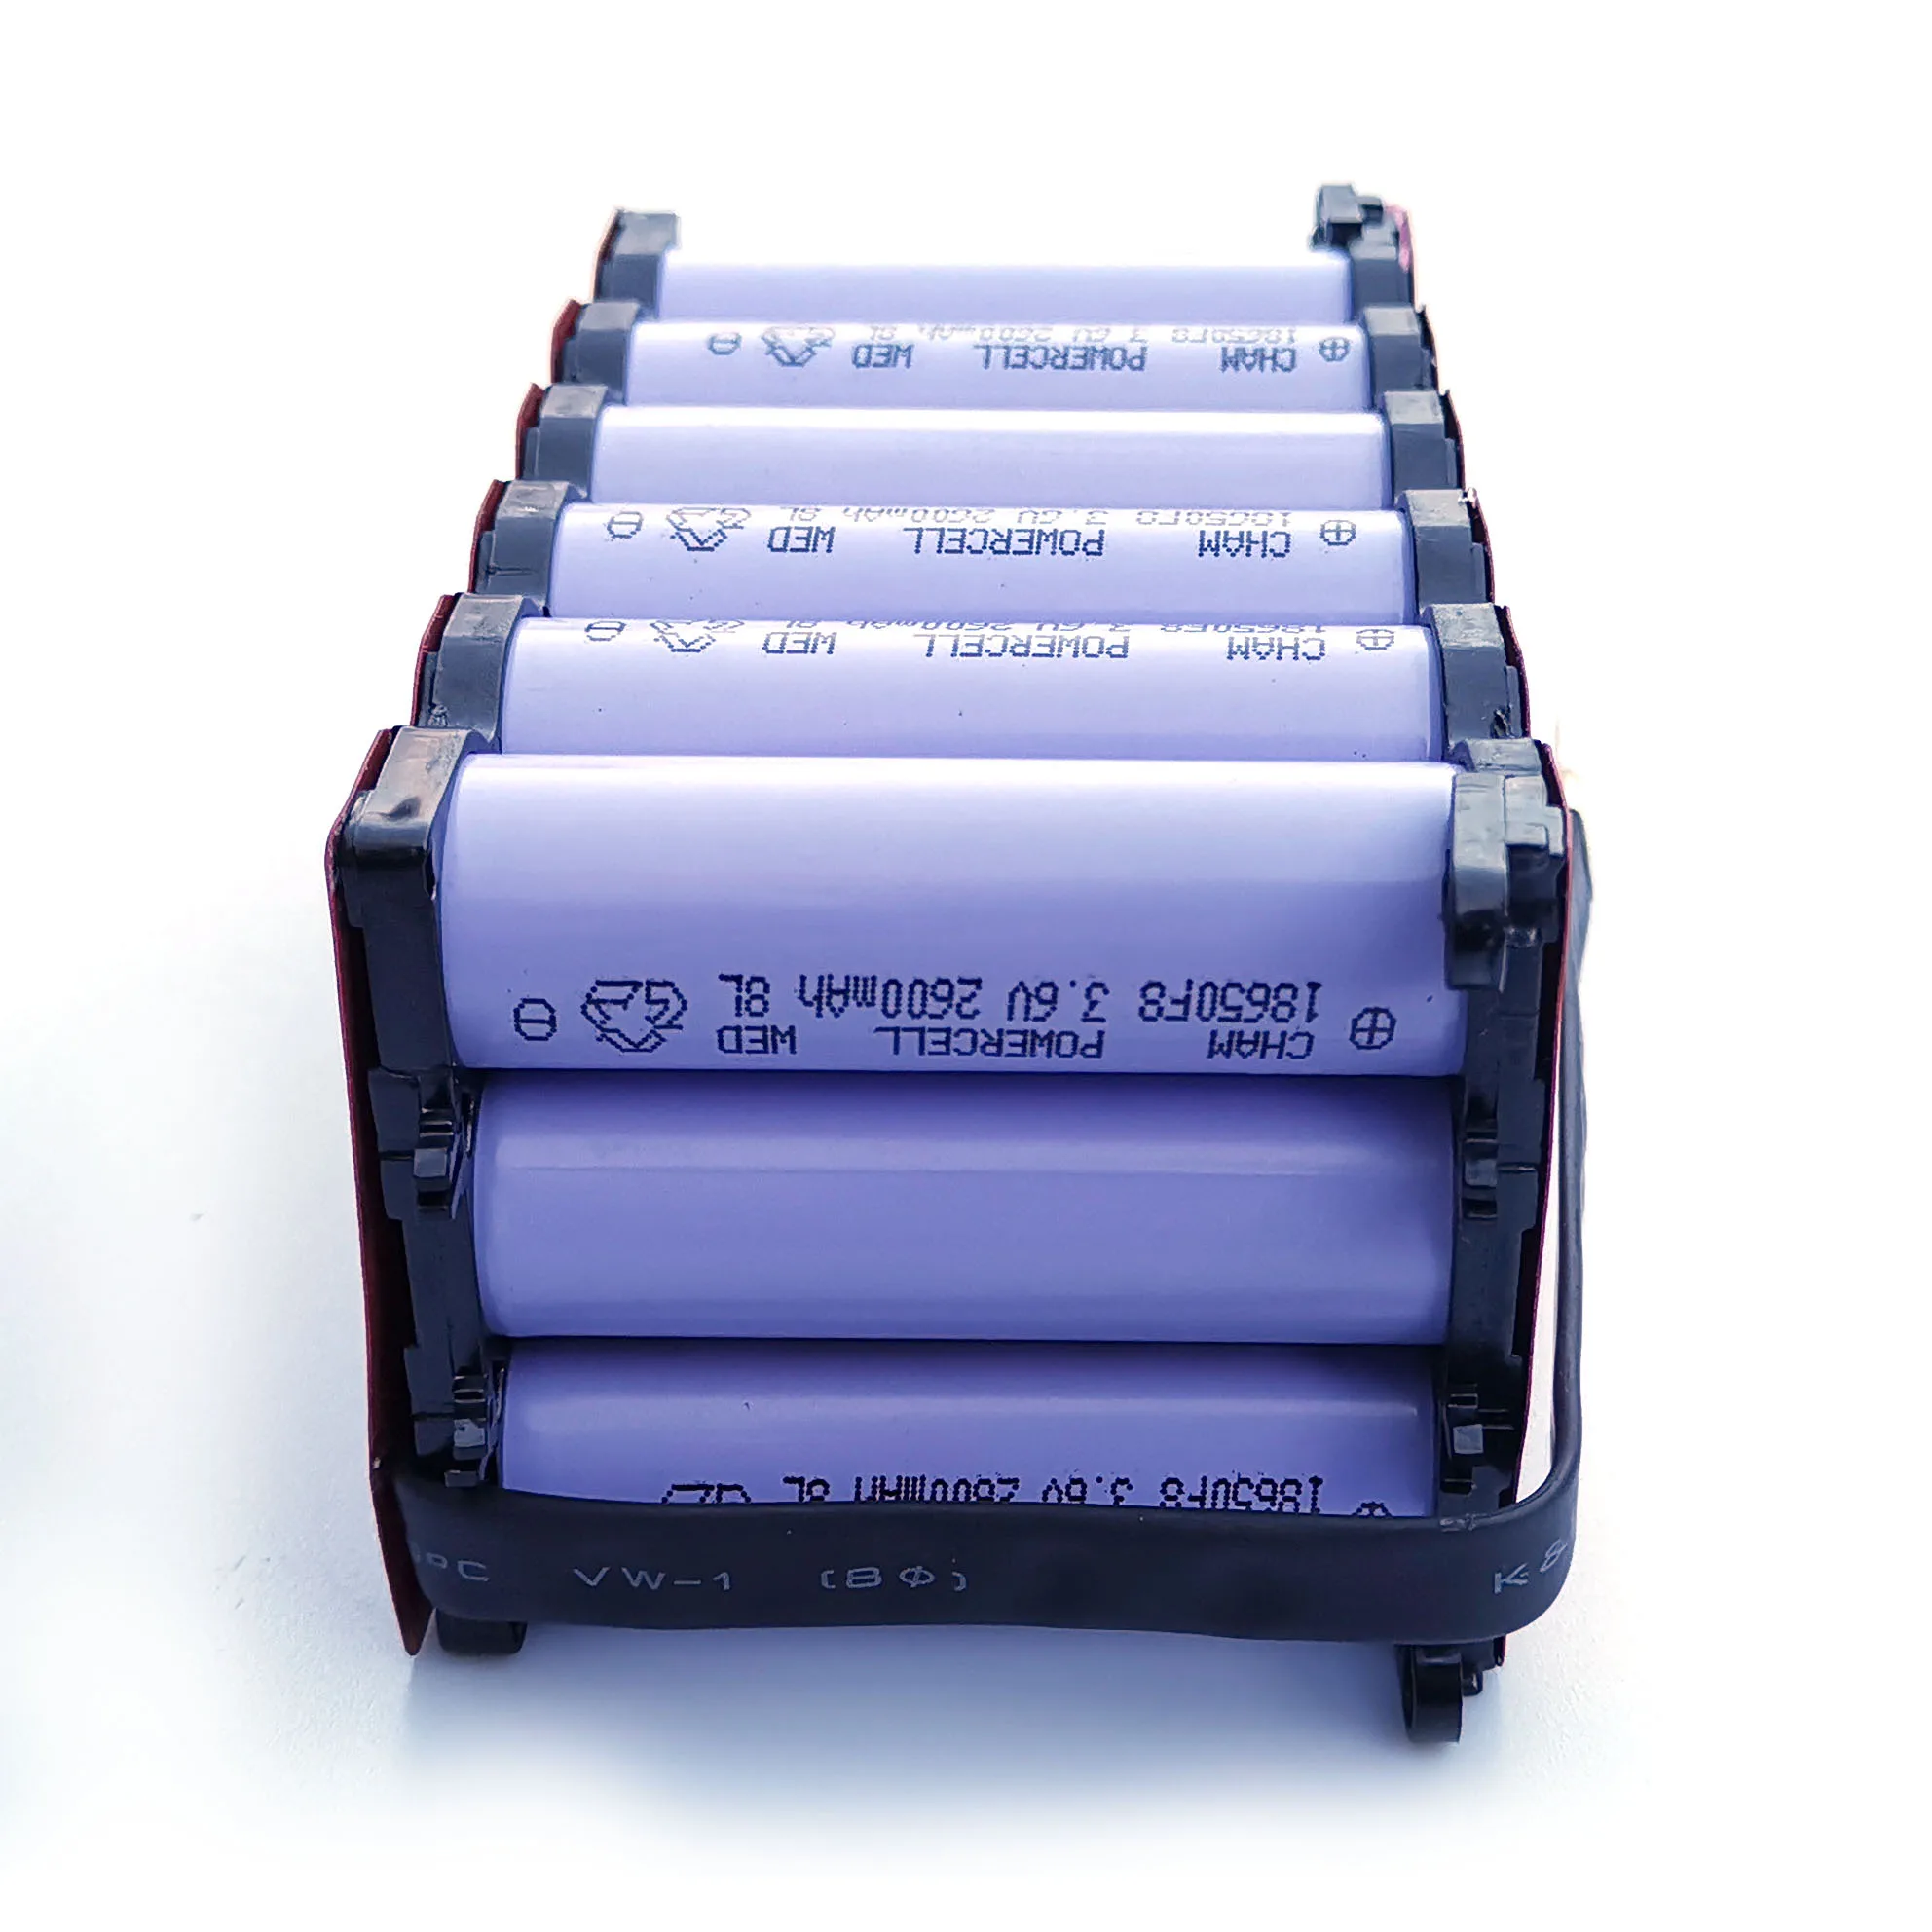 所有行业  电气设备与耗材  电池 锂离子电池  规格 odm/oem 欢迎光临